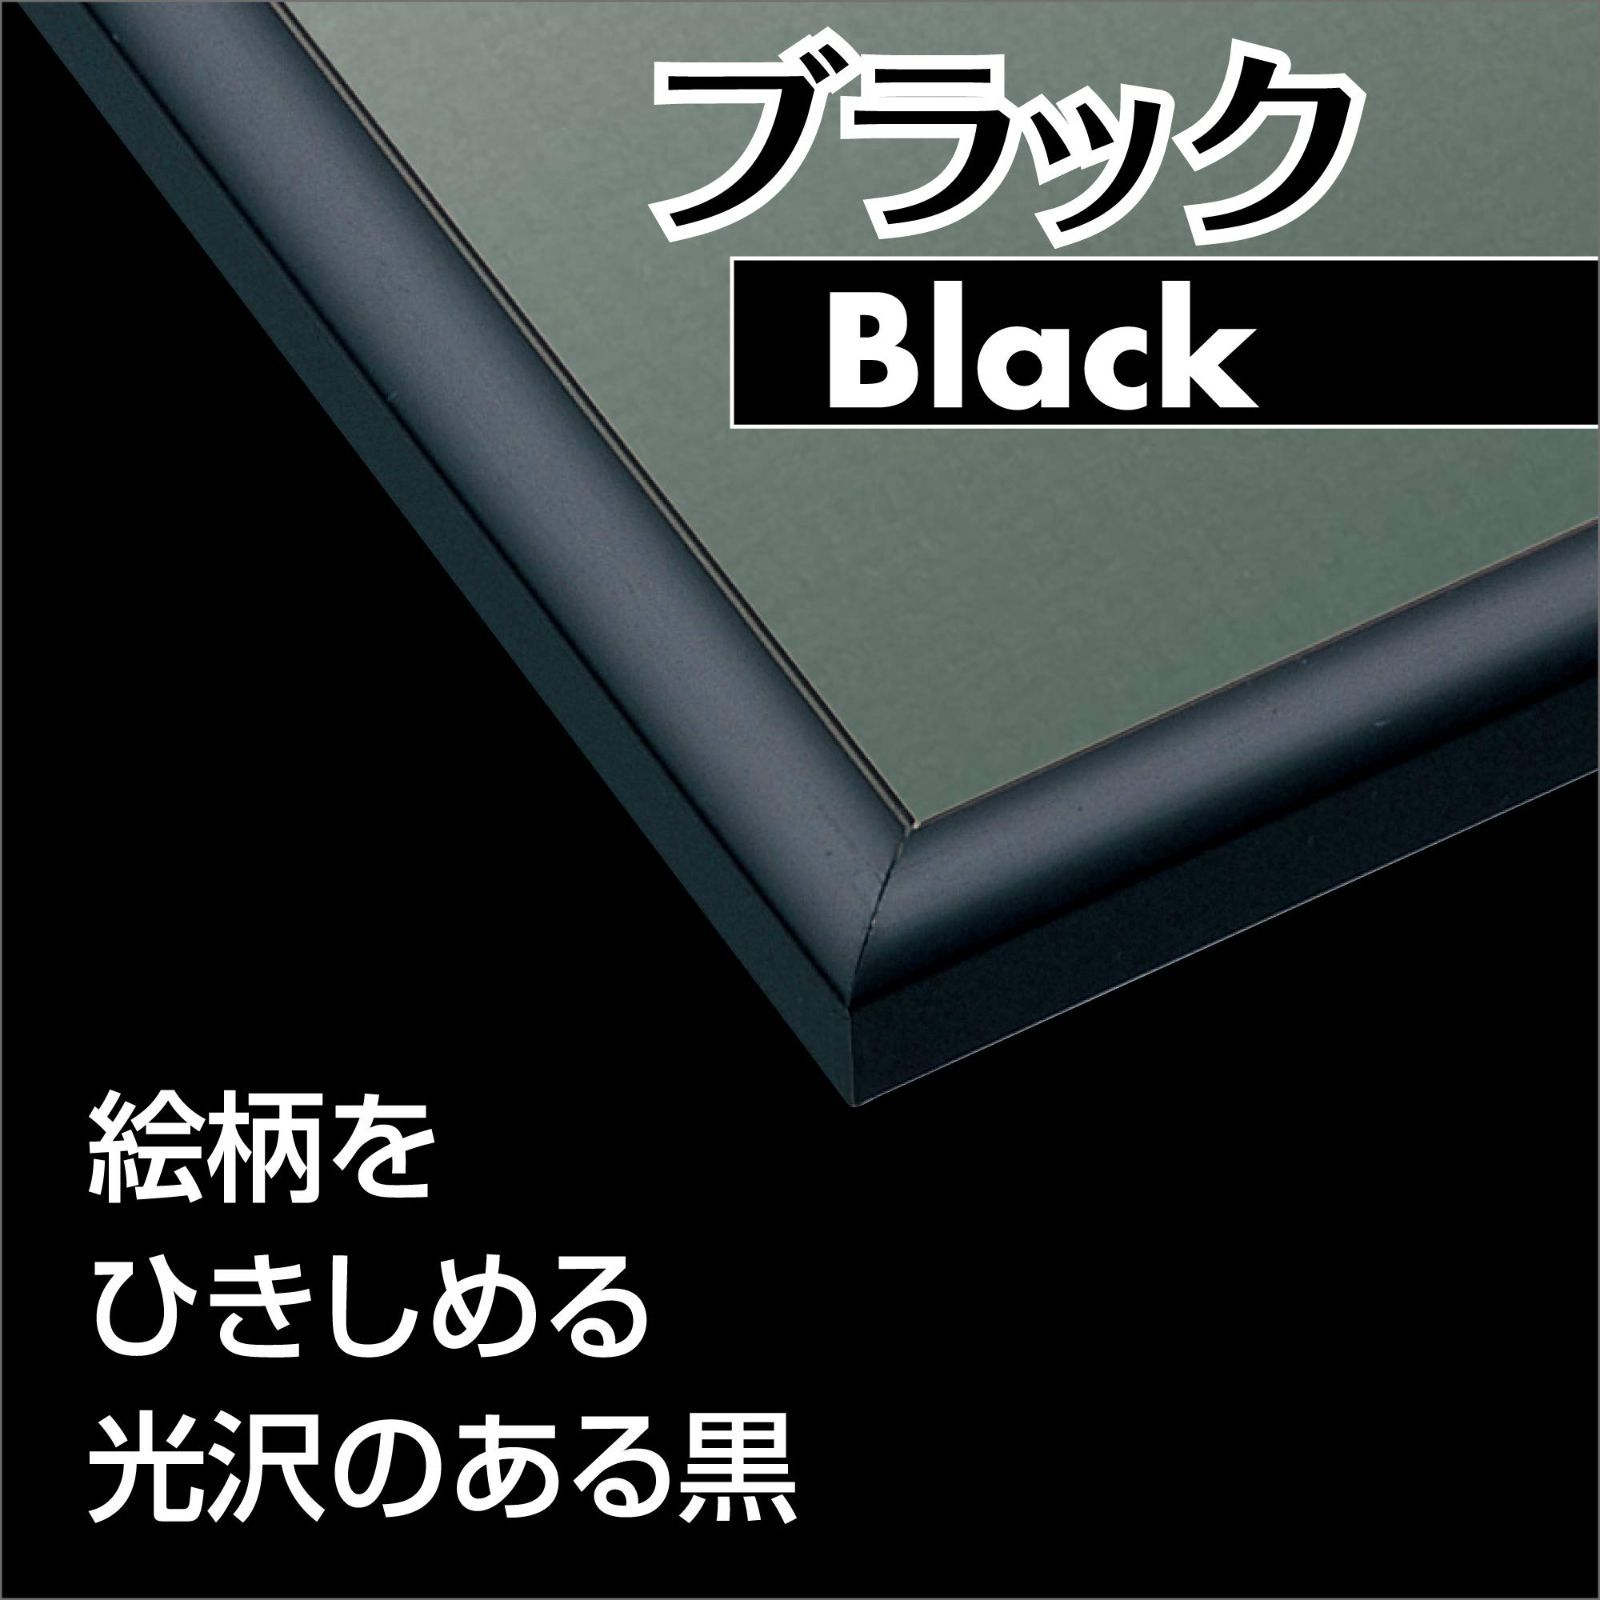 新着商品】Frame パズル UVカット仕様 (38x53cm)(パネルNo.5-B) 額縁 ブラック パネルマックス EPOCH アルミ製パズルフレーム  エポック社 メルカリShops